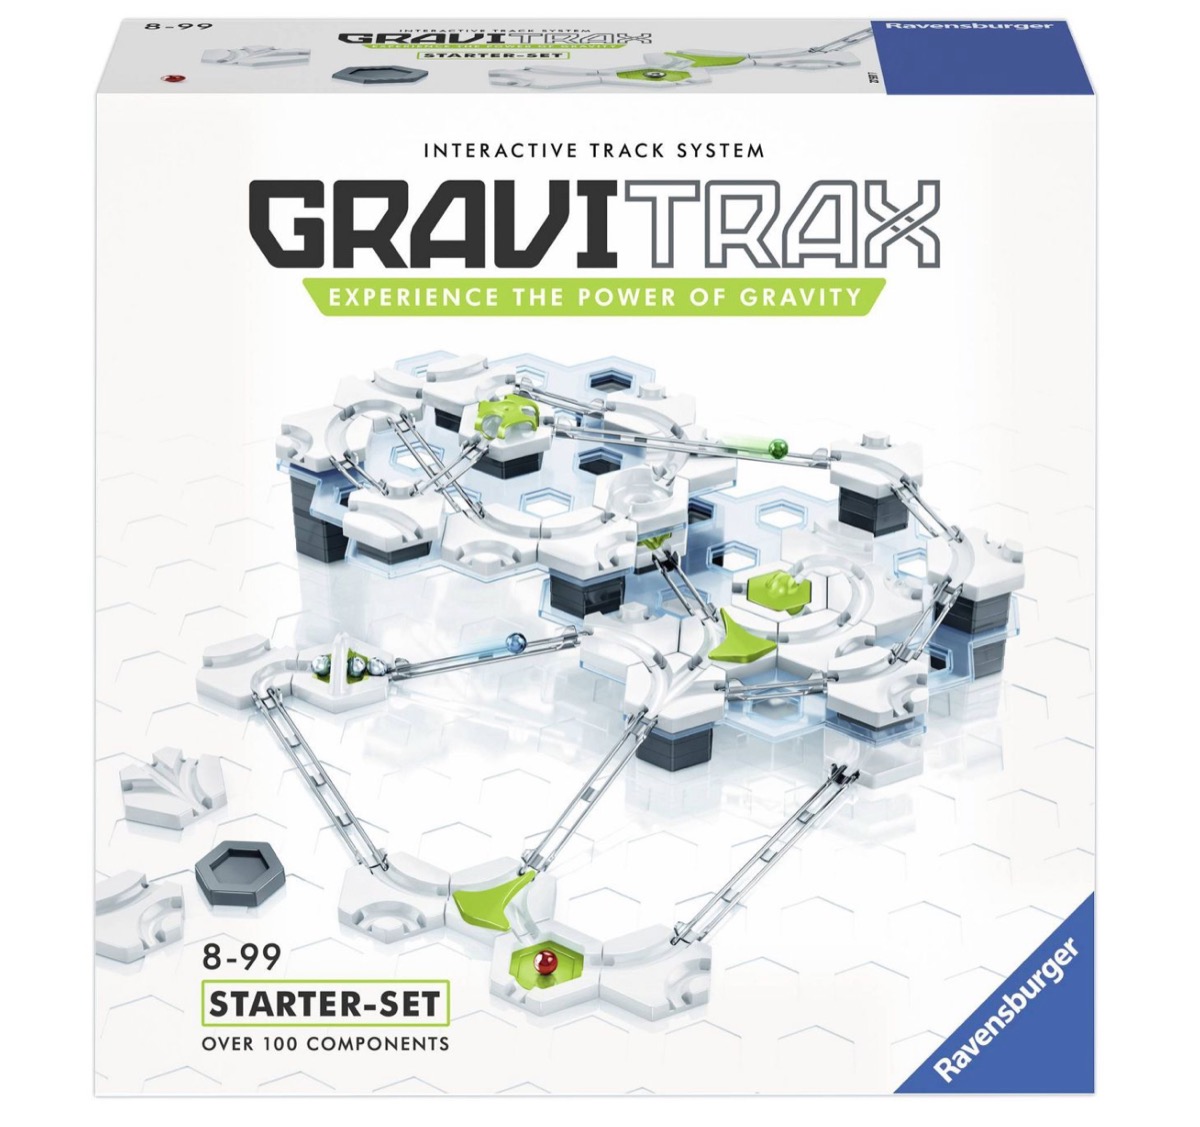 gravitrax building kit